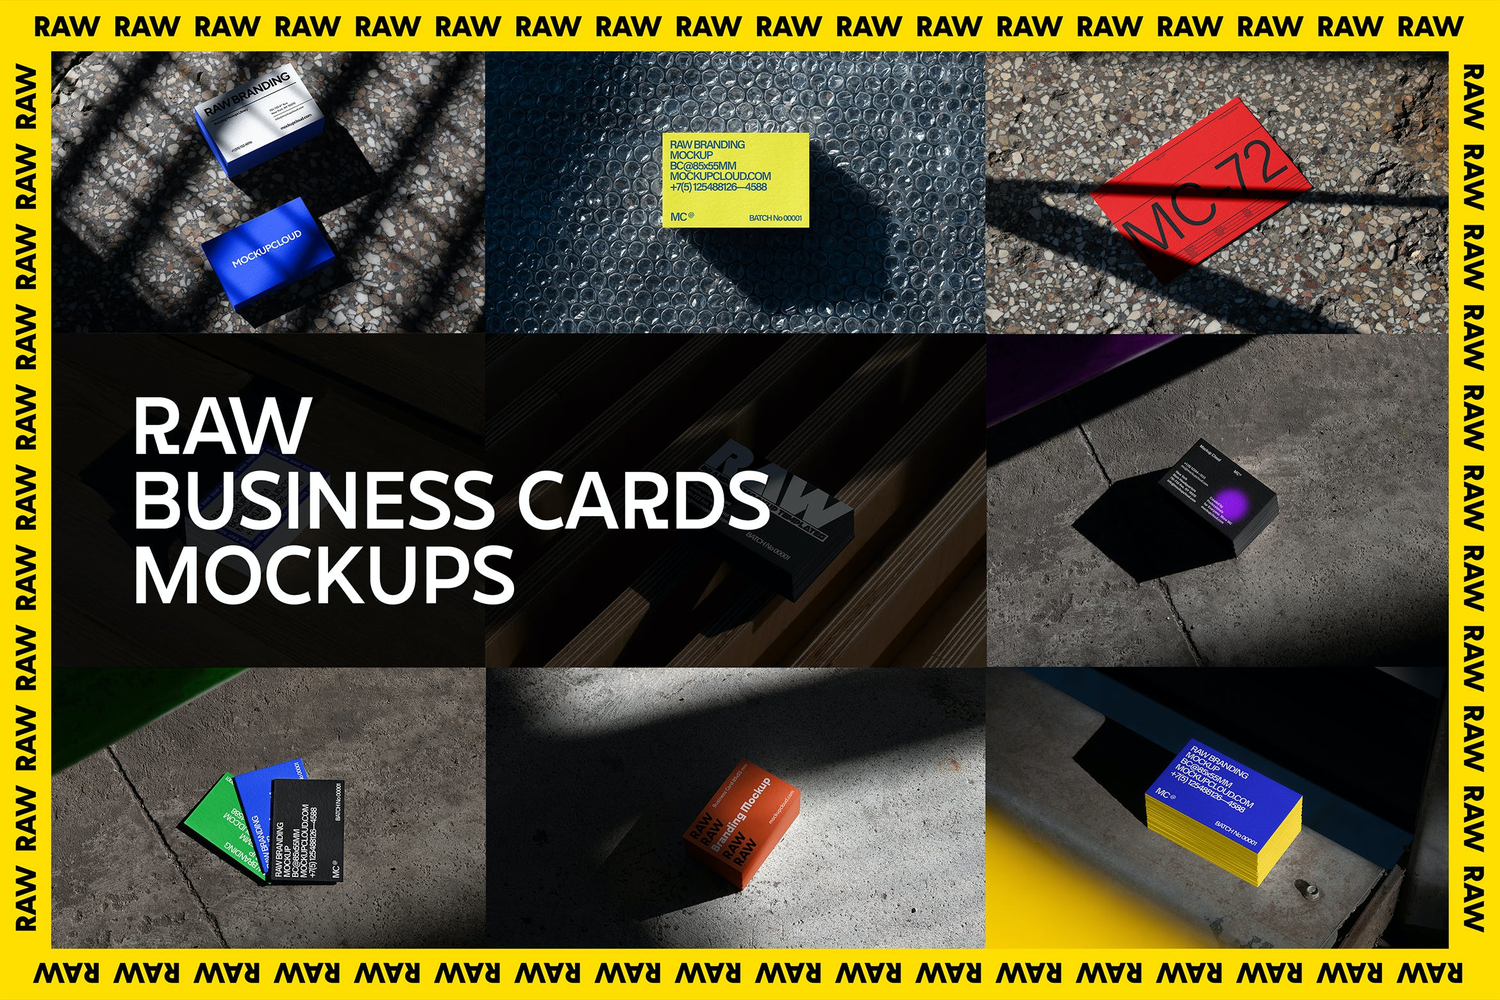 4750 21款质感光影工业风名片卡片设计作品贴图ps样机素材场景展示模板 Raw Business Cards Mockups@GOOODME.COM